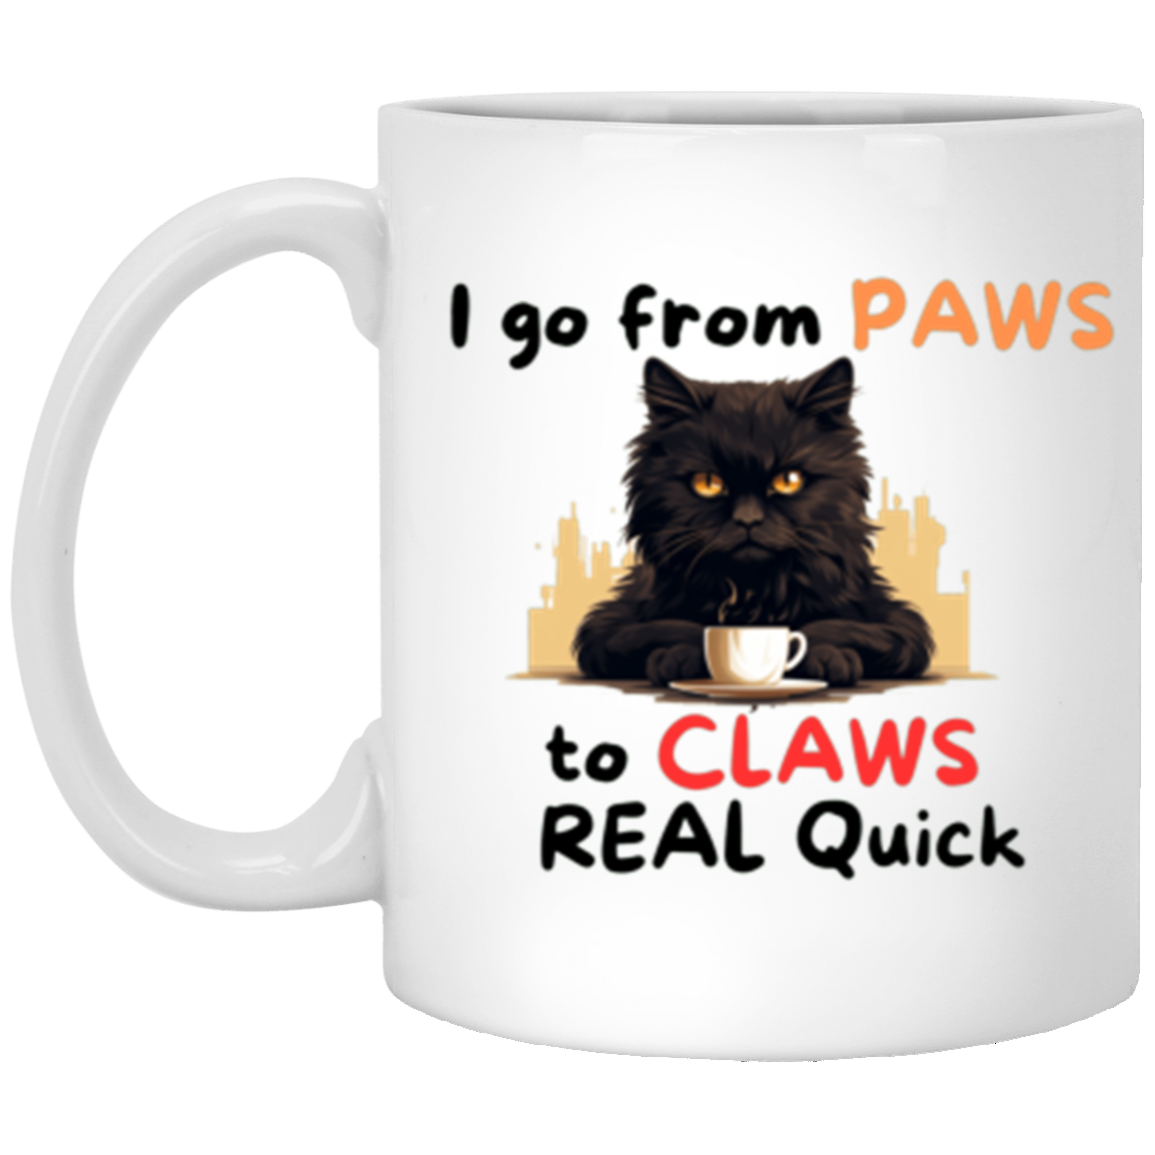 Paws to Claws Ceramic Mug 11oz White Mug